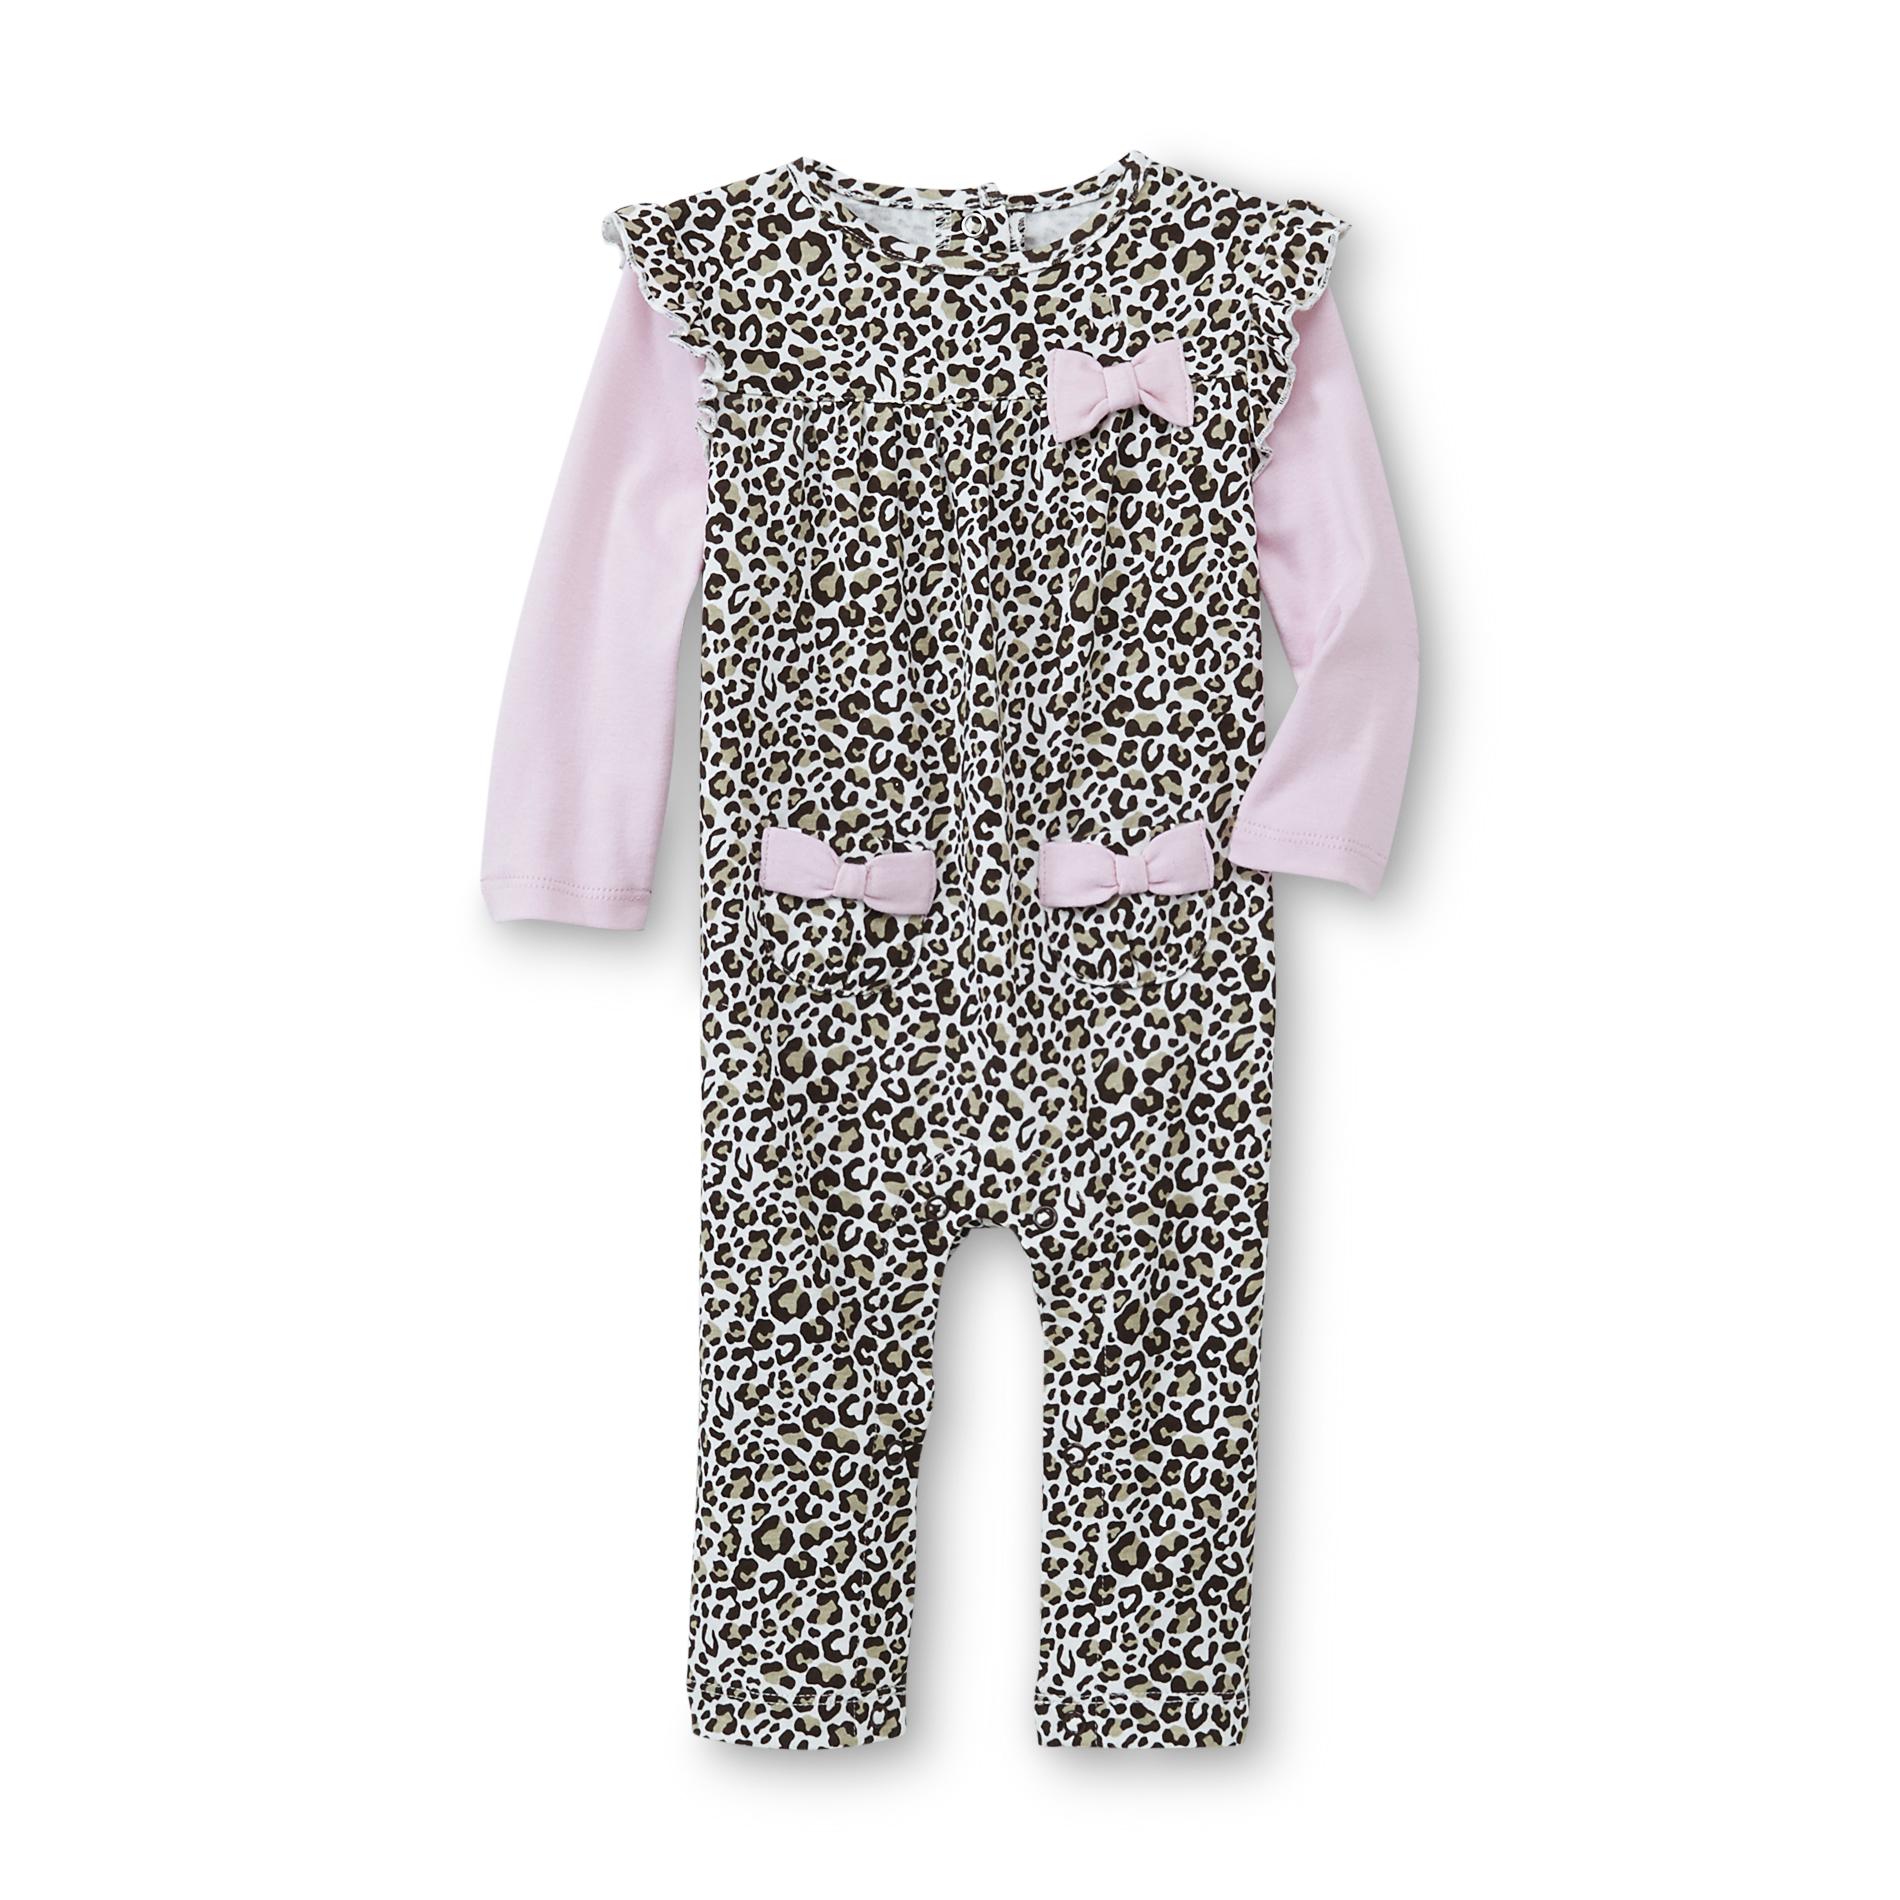 Little Wonders Newborn Girl's Long-Sleeve Romper - Leopard Print